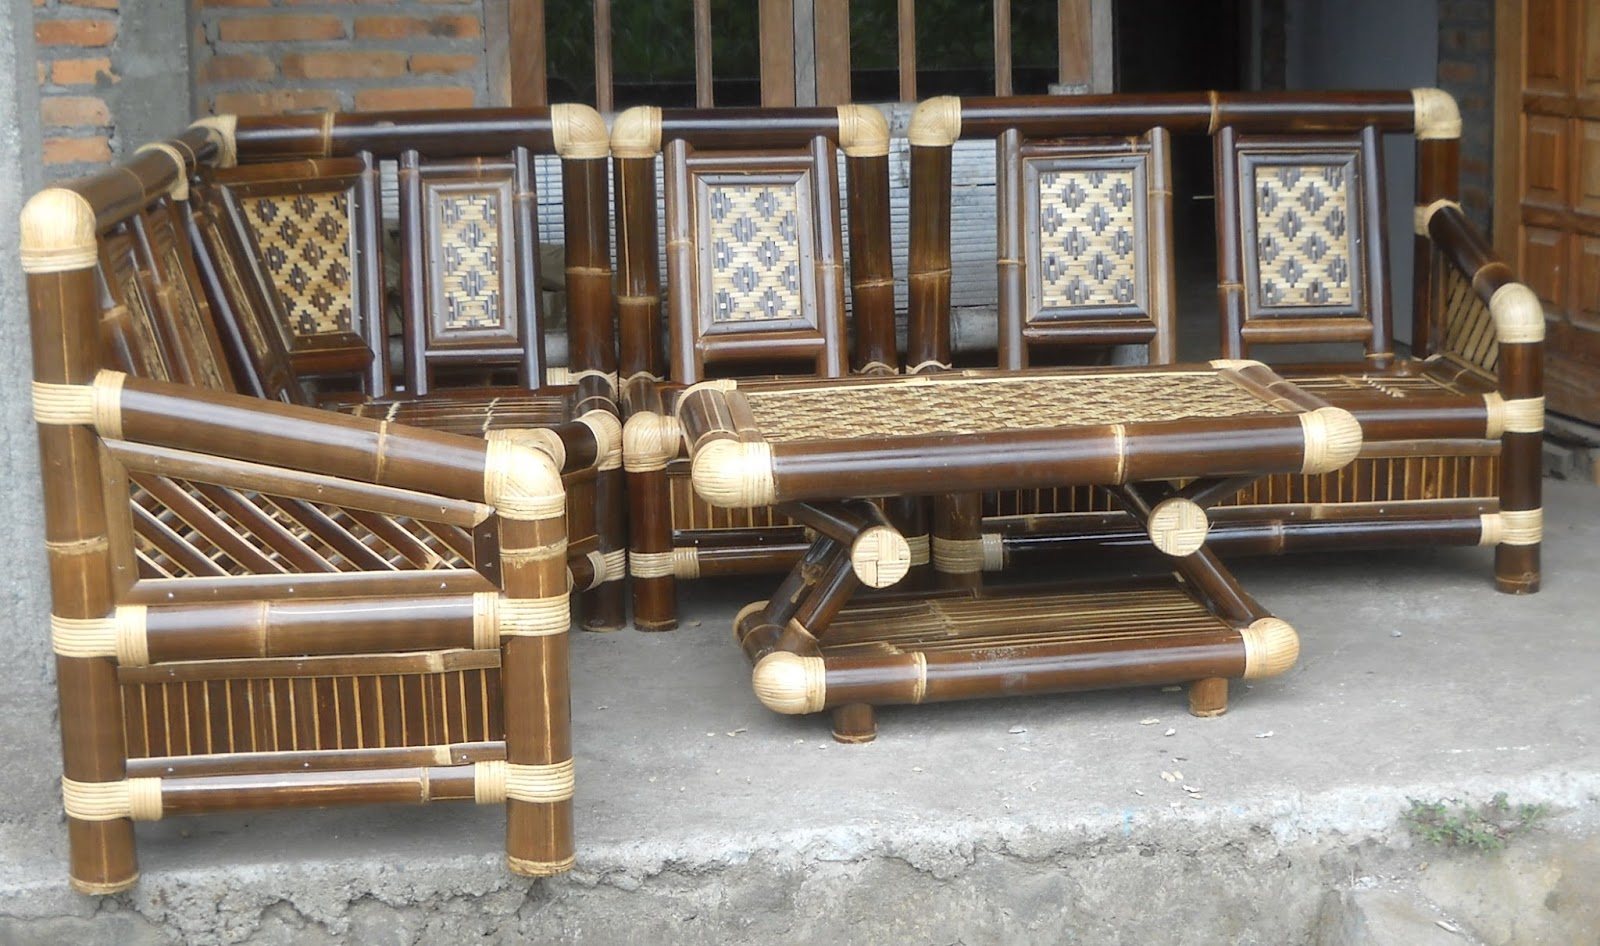 30 Ide Kreatif Furniture dan Perlengkapan Rumah Dari Bambu 